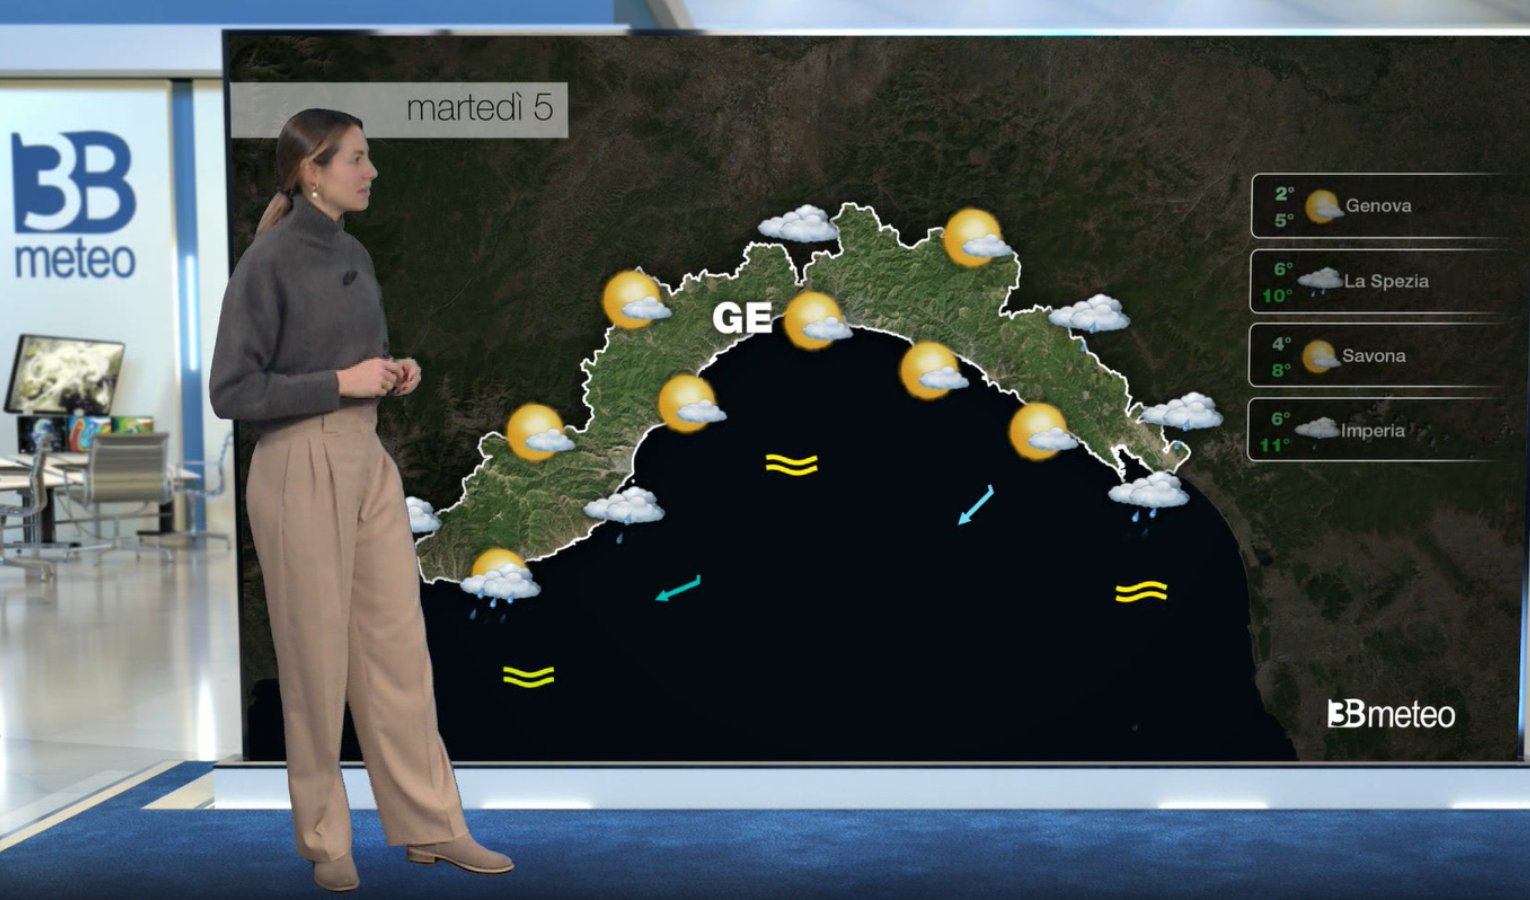 Meteo in Liguria, le previsioni del tempo per l'inizio settimana